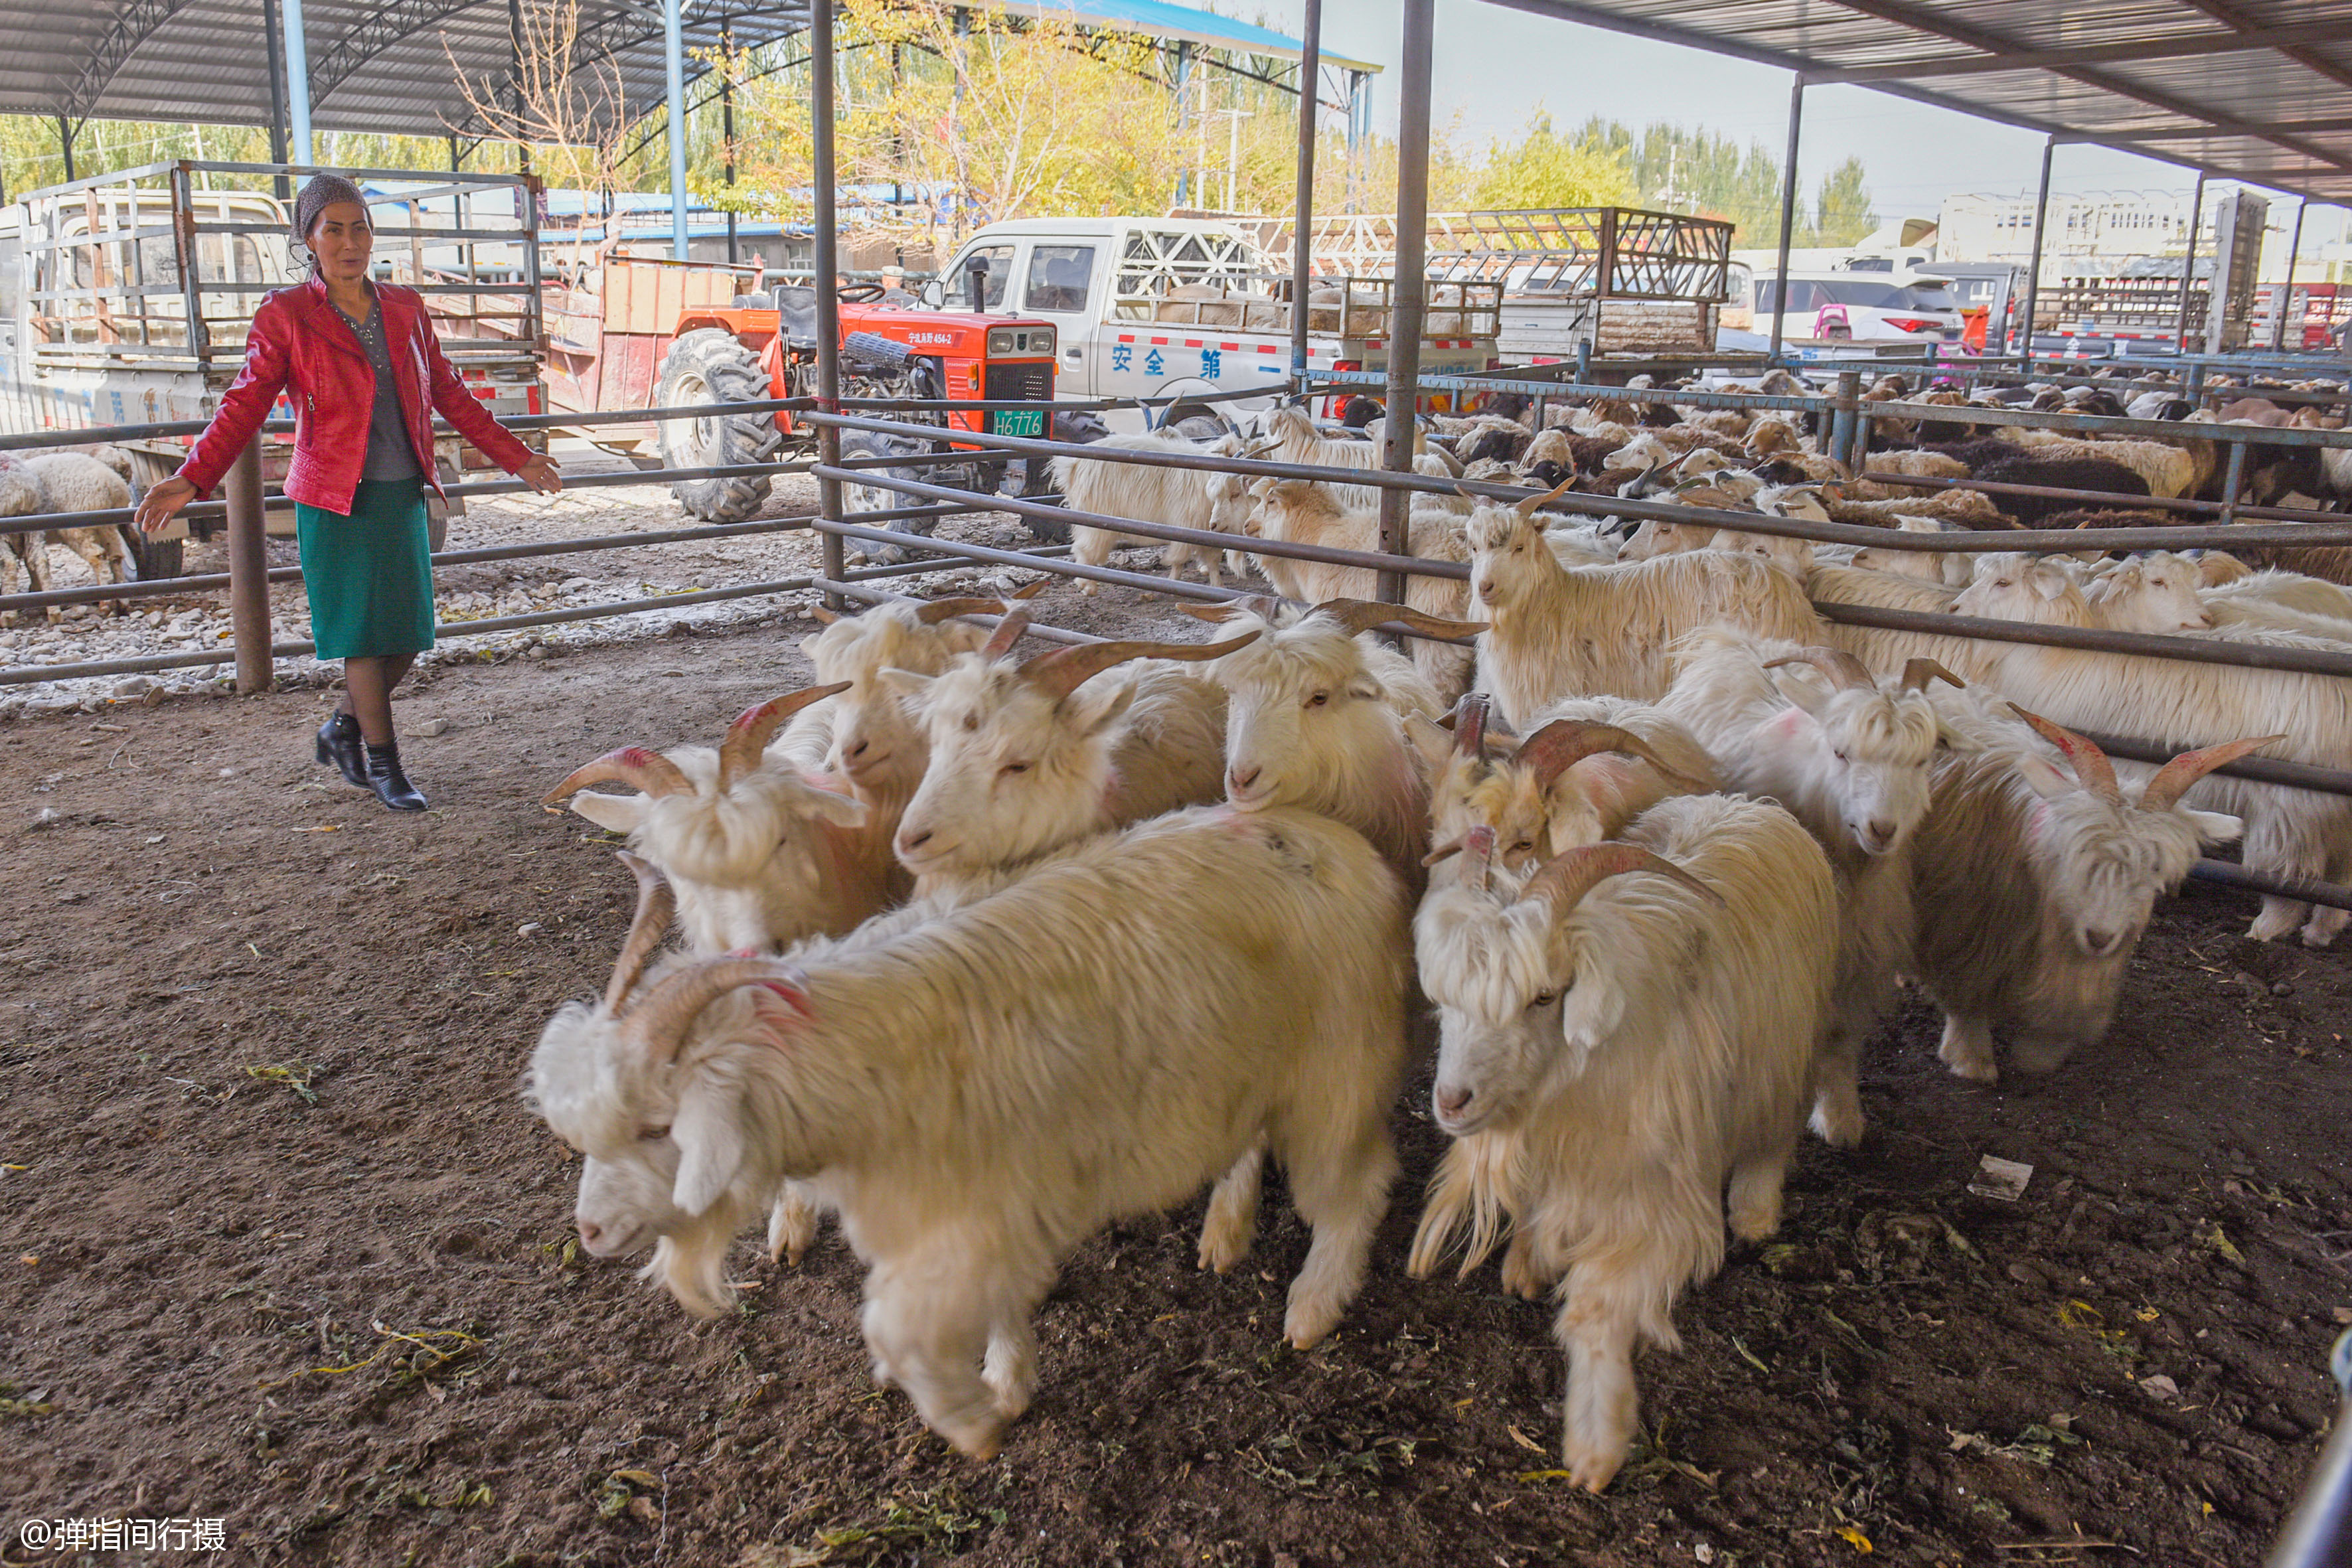 新疆牛羊市场妙趣横生,羊群排长队售卖,如此壮观场面你见过吗?